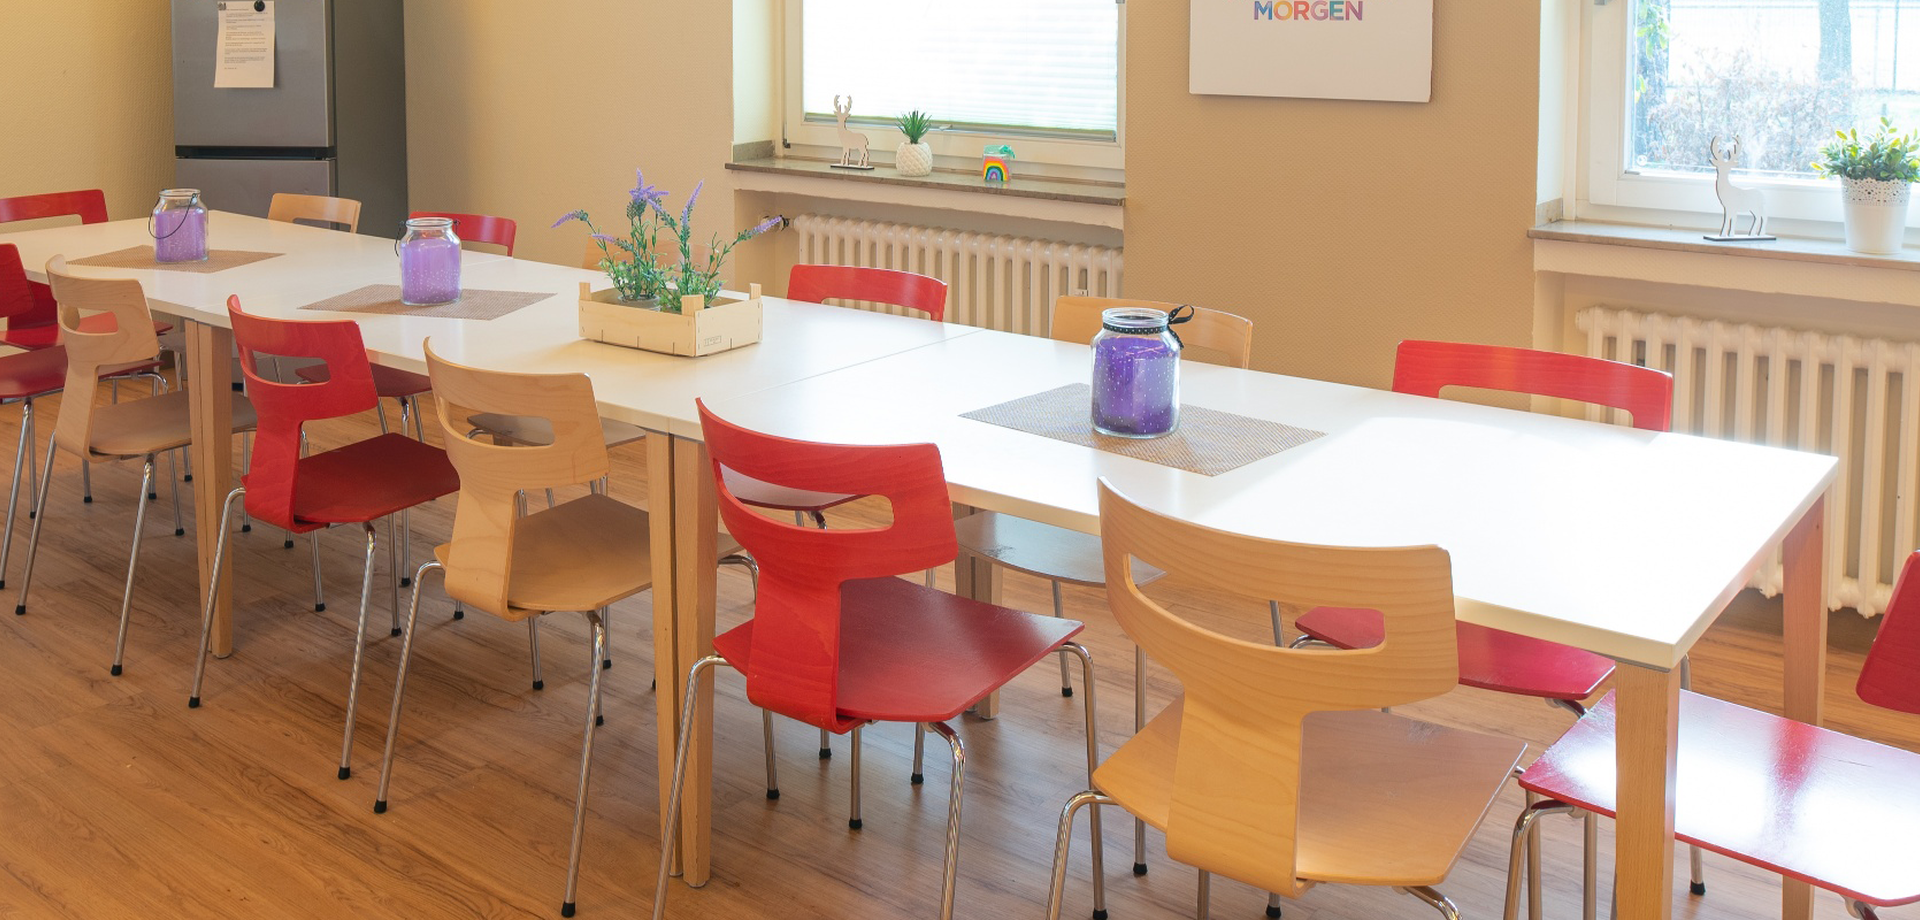 In einem Essraum steht ein großer Tisch mit Holzstühlen, die teilweise rot sind. Auf dem Tisch stehen violette Dekogläser und eine Pflanze.